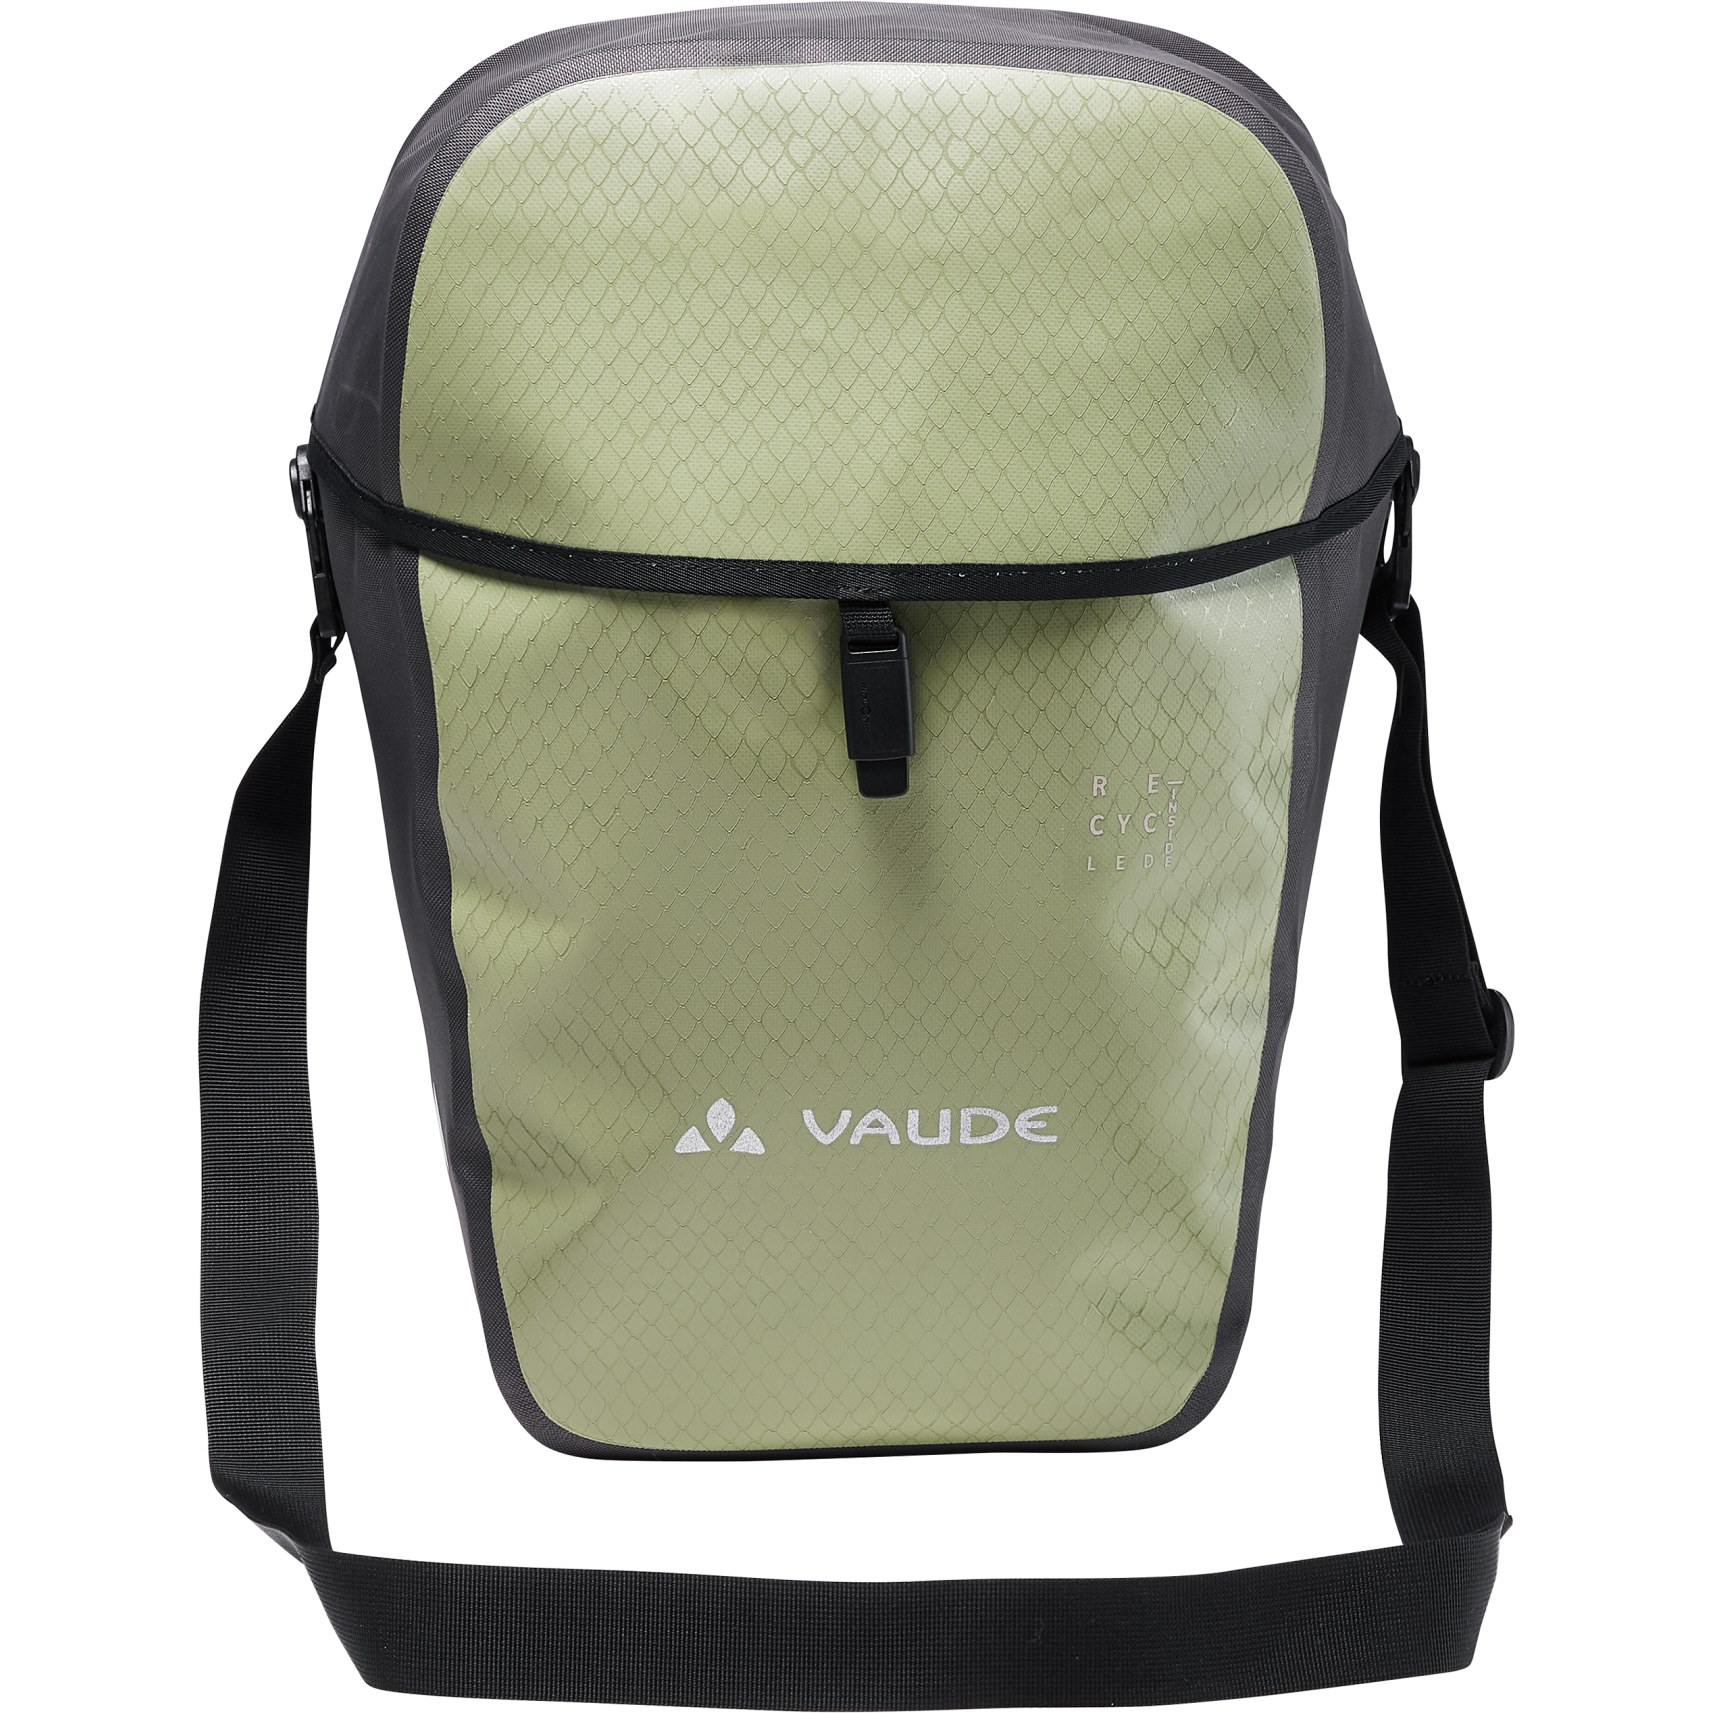 Productfoto van Vaude Aqua Commute Single Tas voor de Achterkant 26L - fango